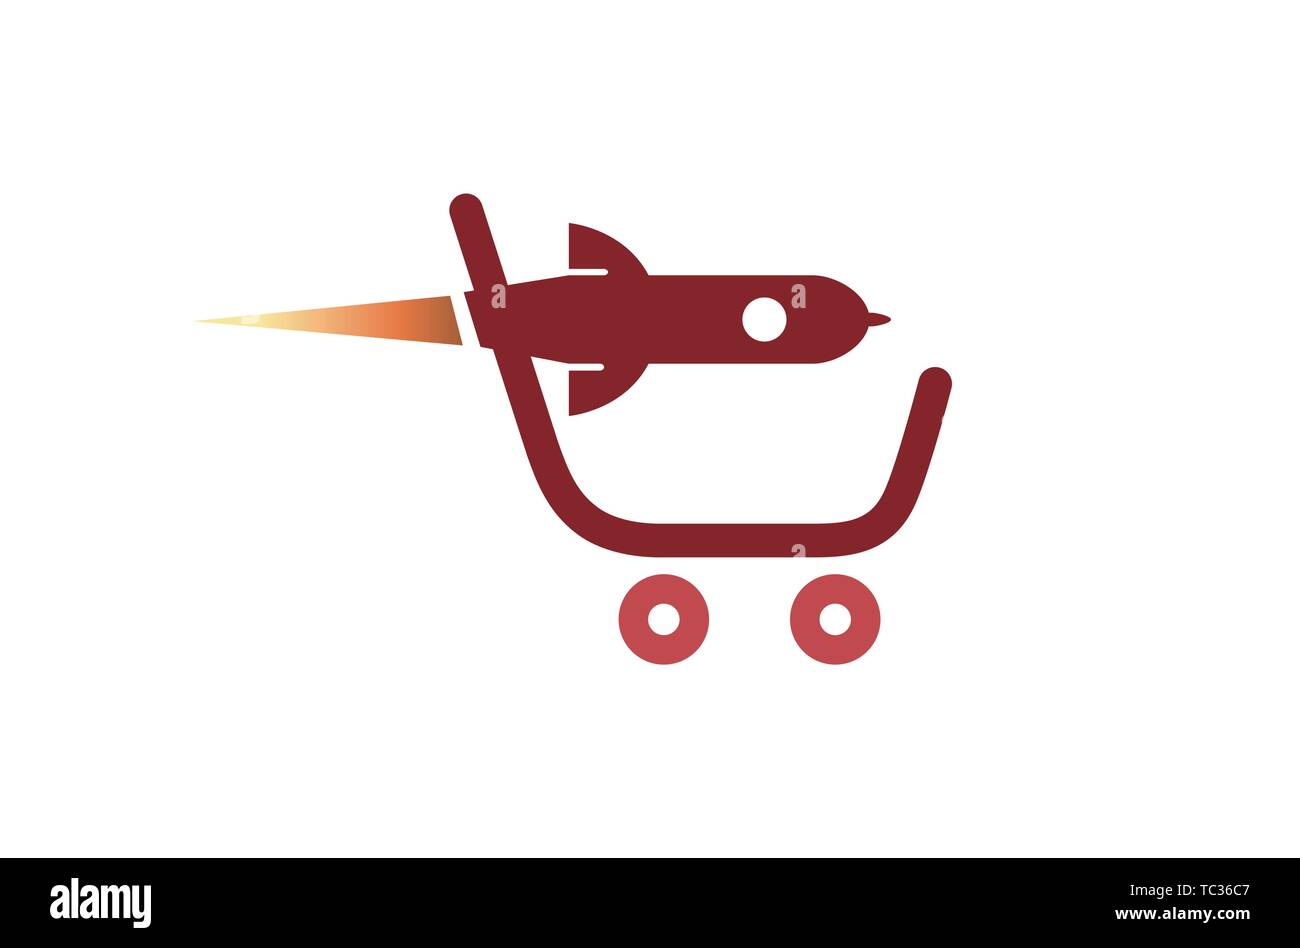 creative shopping cart rocket logo vector Stock Vector